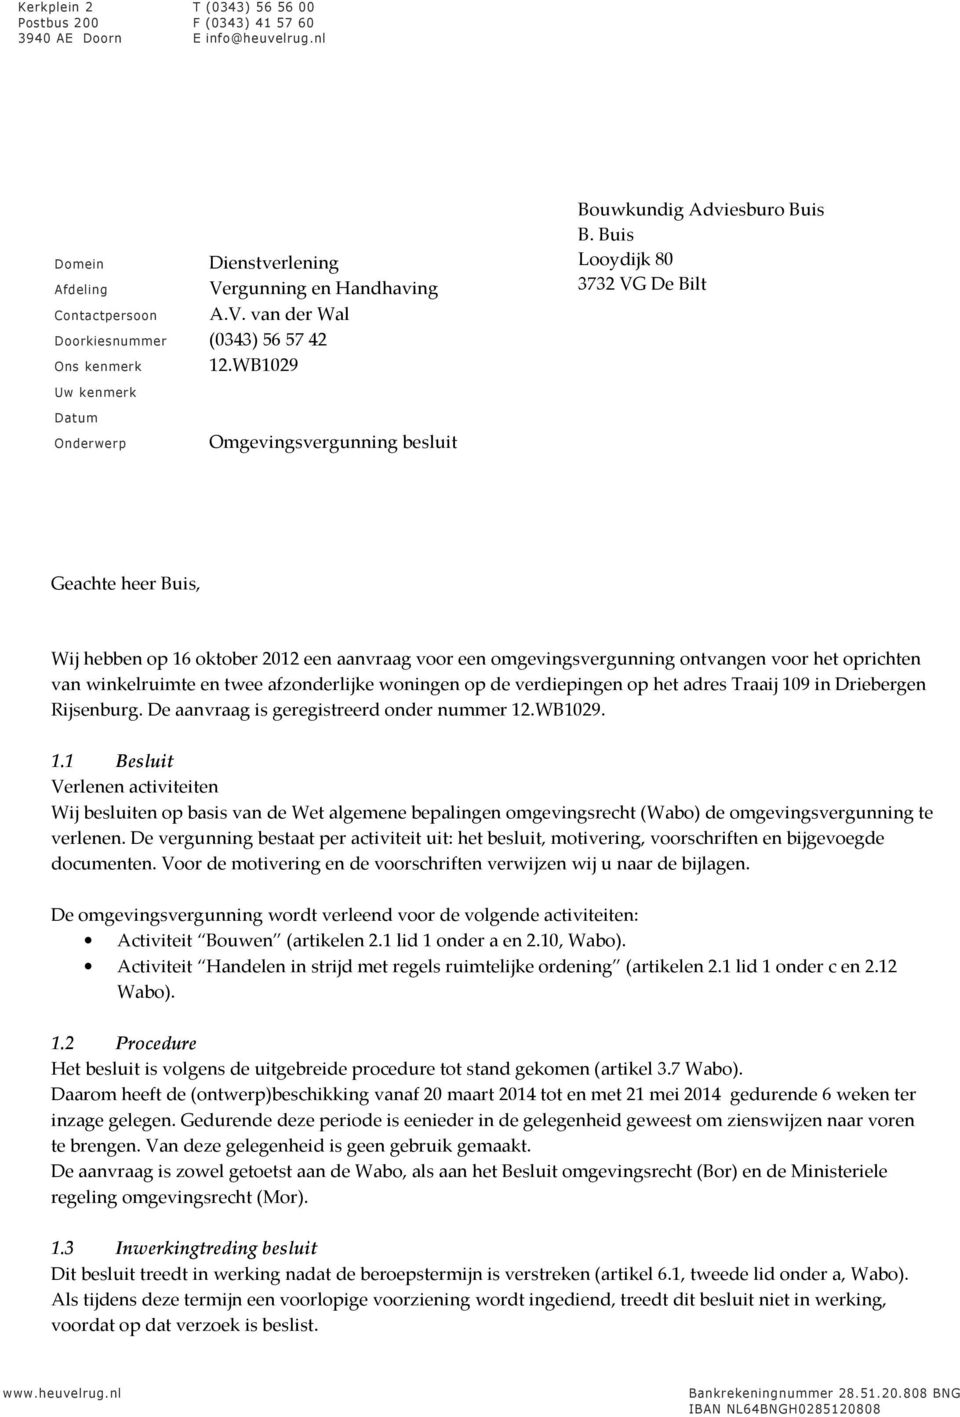 Buis Looydijk 80 3732 VG De Bilt Geachte heer Buis, Wij hebben op 16 oktober 2012 een aanvraag voor een omgevingsvergunning ontvangen voor het oprichten van winkelruimte en twee afzonderlijke